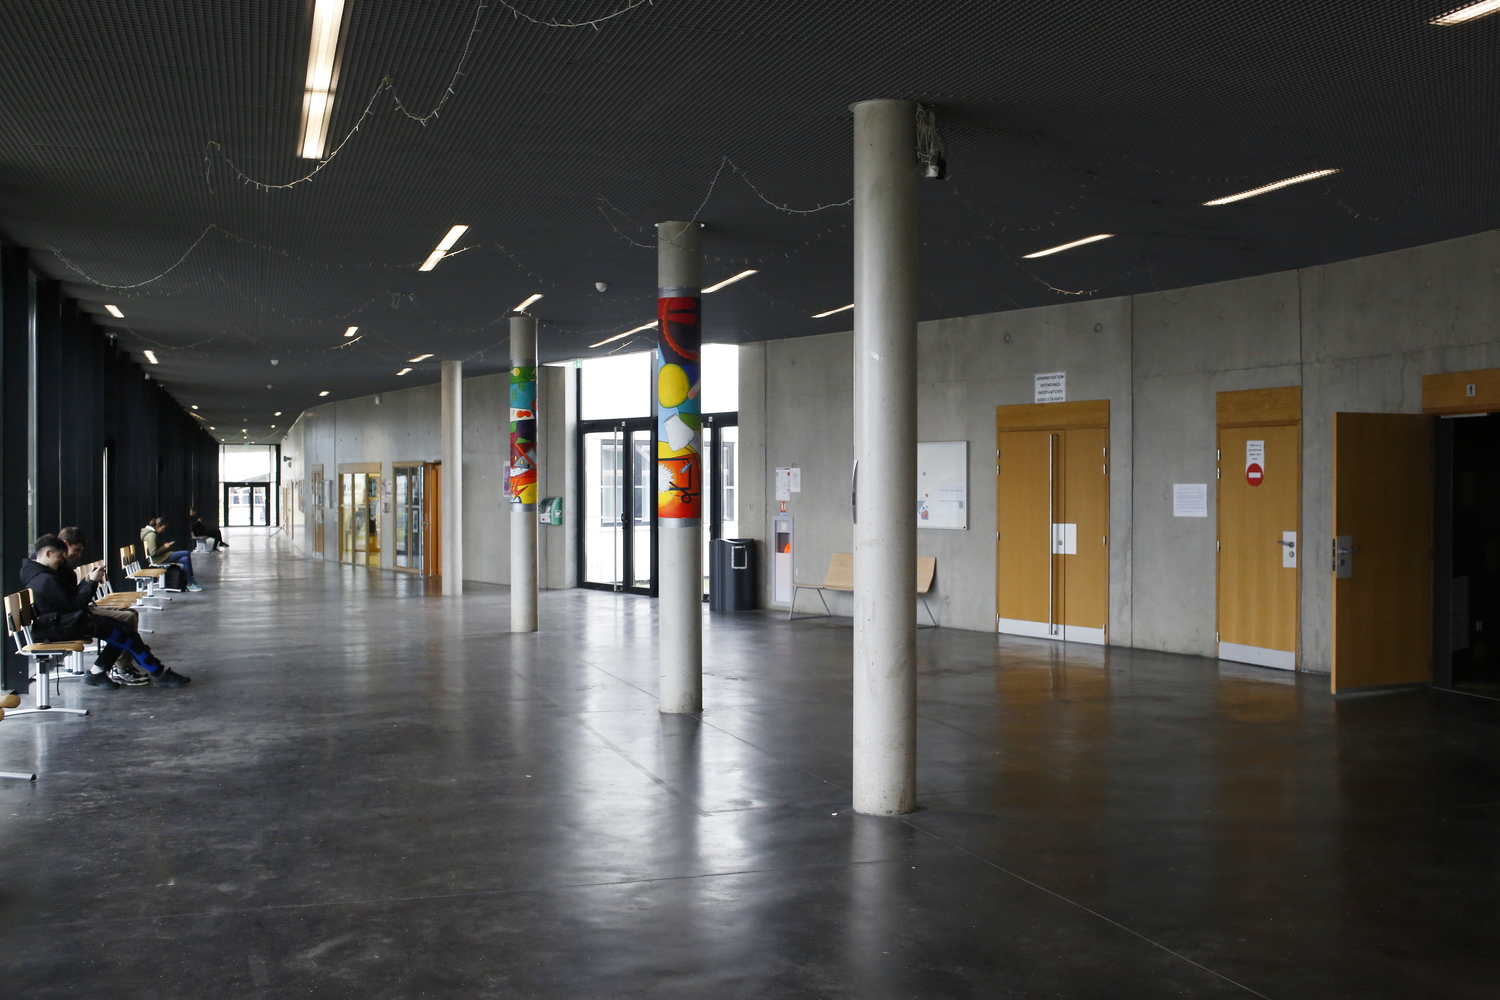 L’intérieur du nouveau bâtiment, qui accueille les bureaux, salle des profs, CDI, accueil, etc. © Globe Reporters